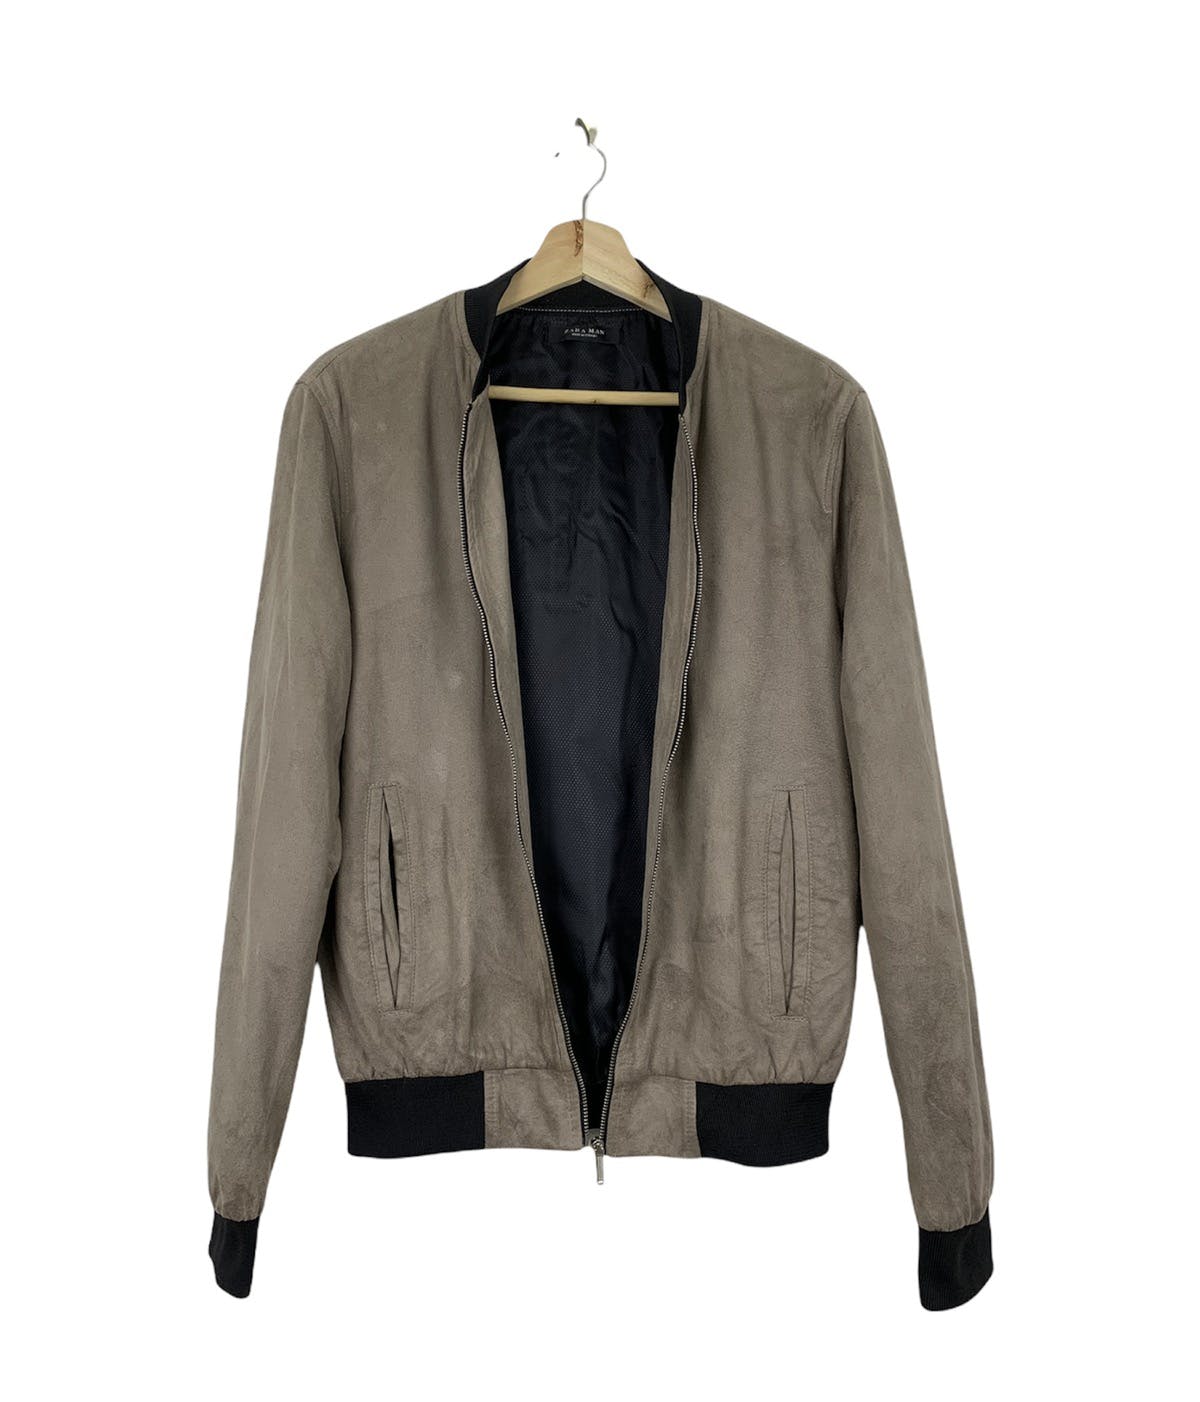 Zara bomber style jacket - 2